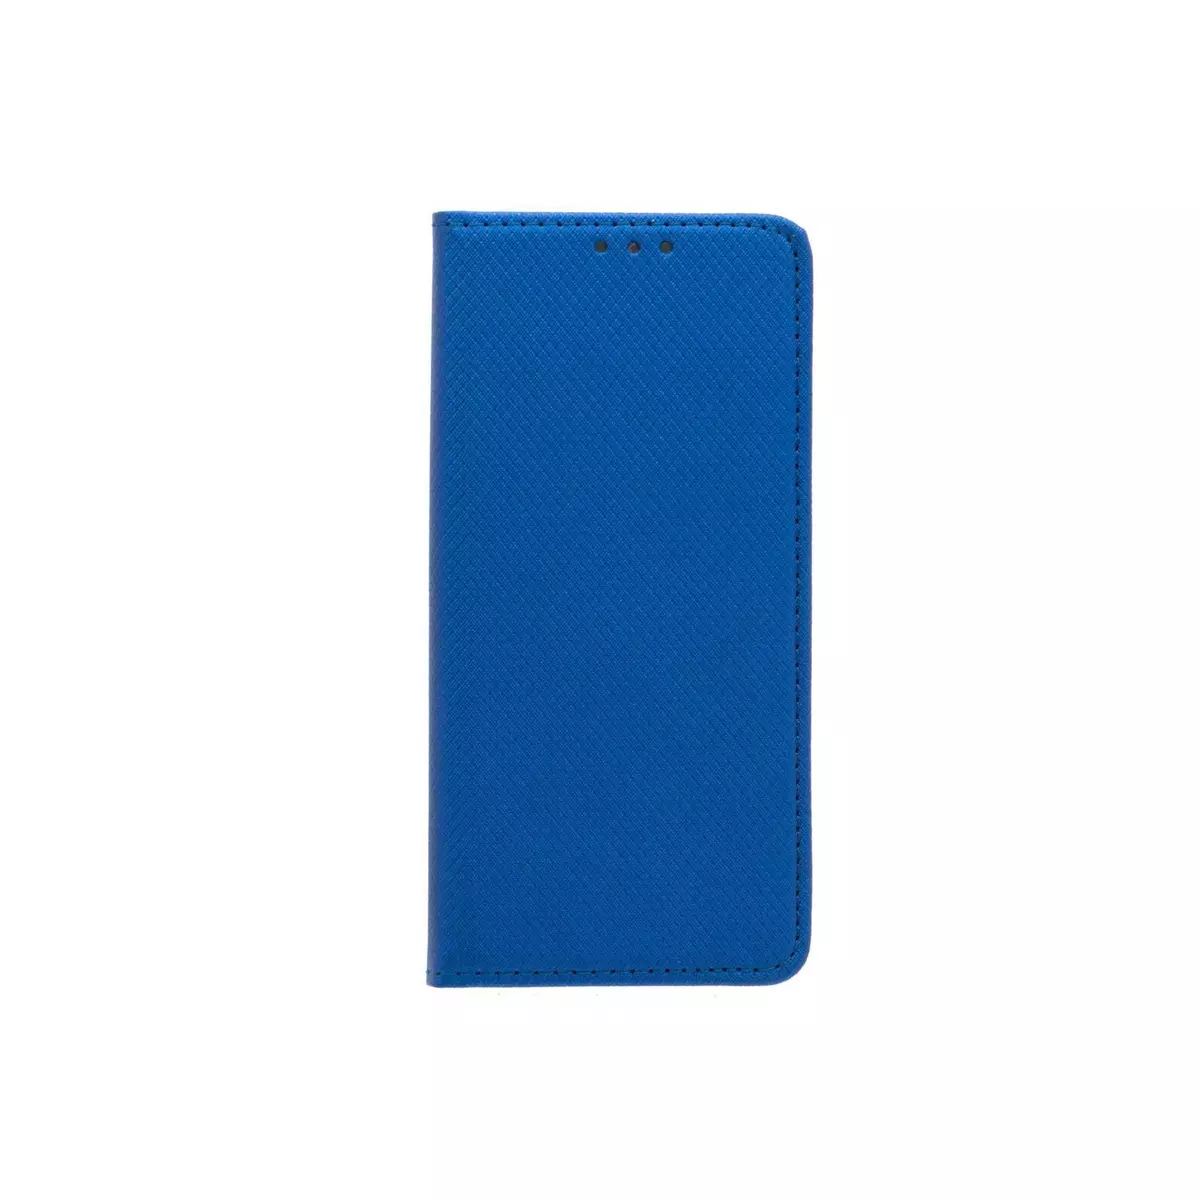 amahousse Housse Galaxy S8 folio bleu texturé aimanté